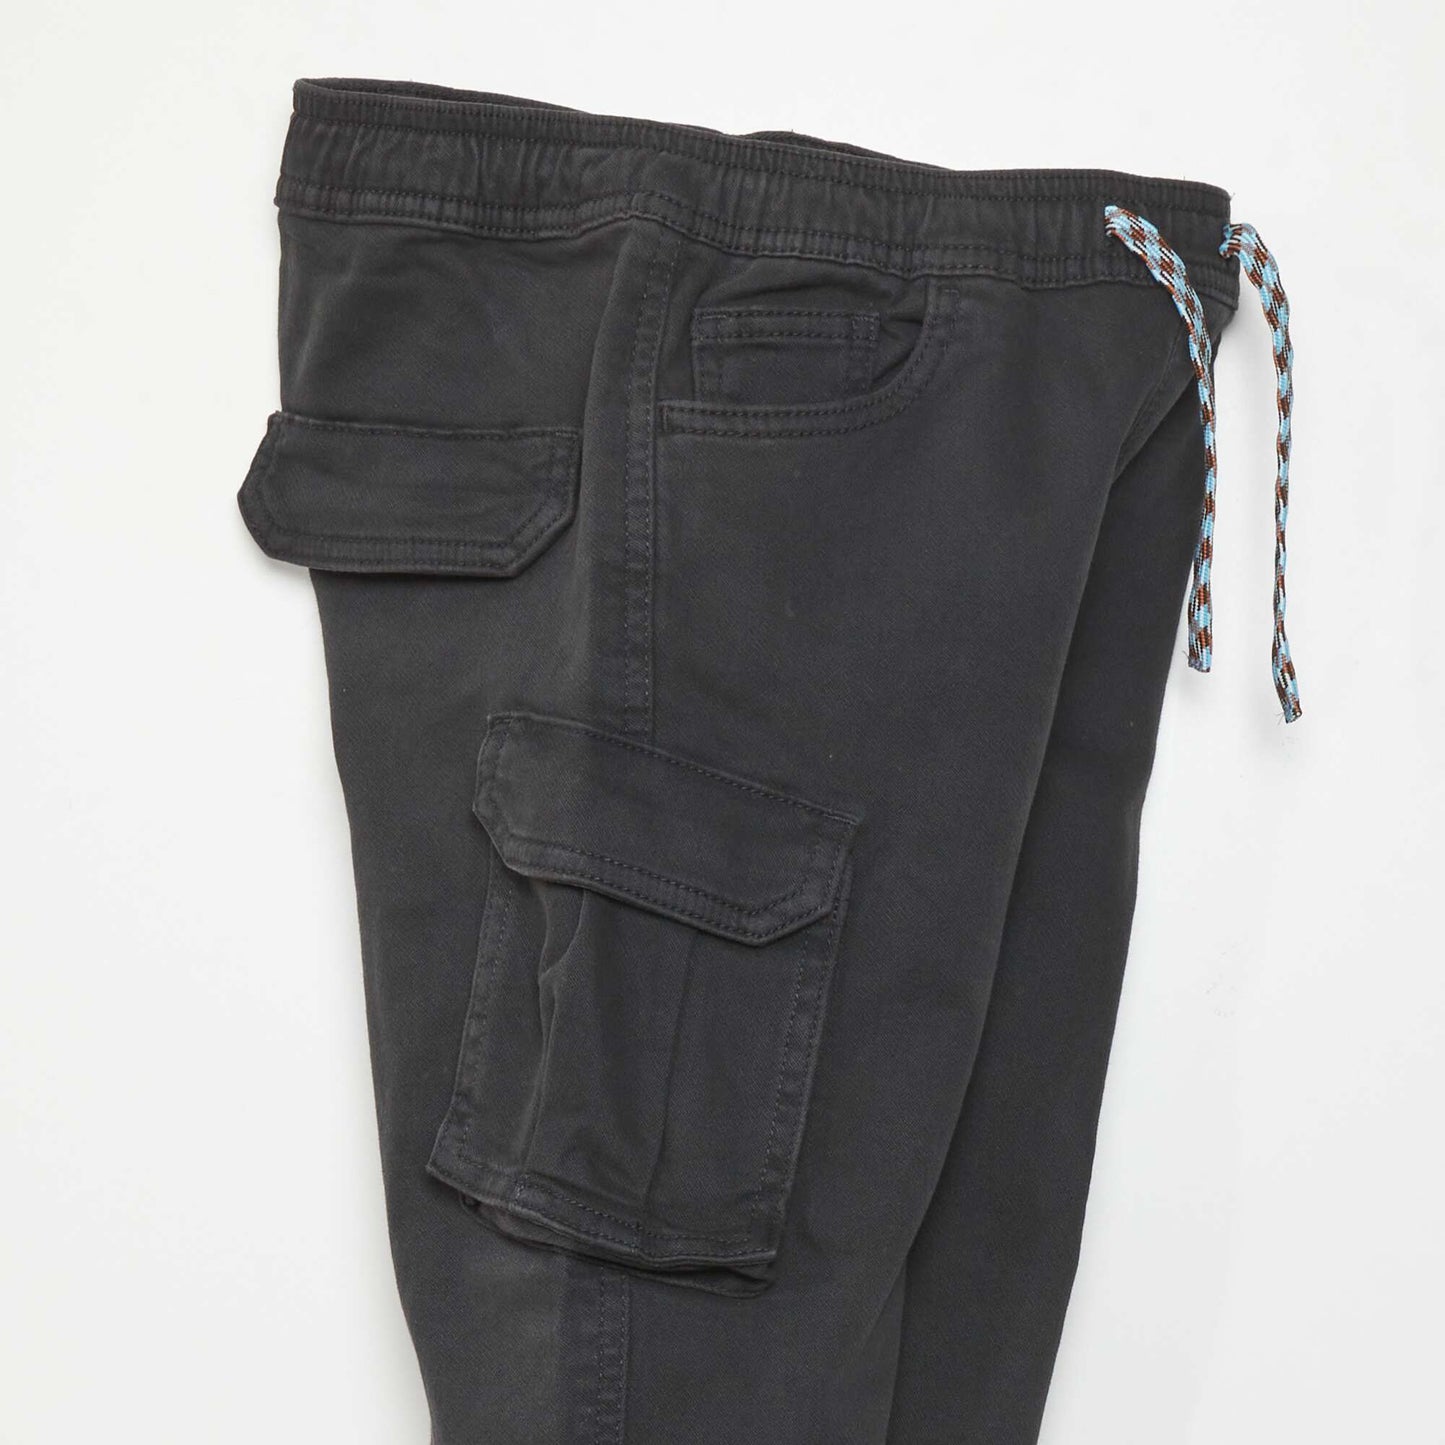 Pantalon avec poches sur les c t s noir